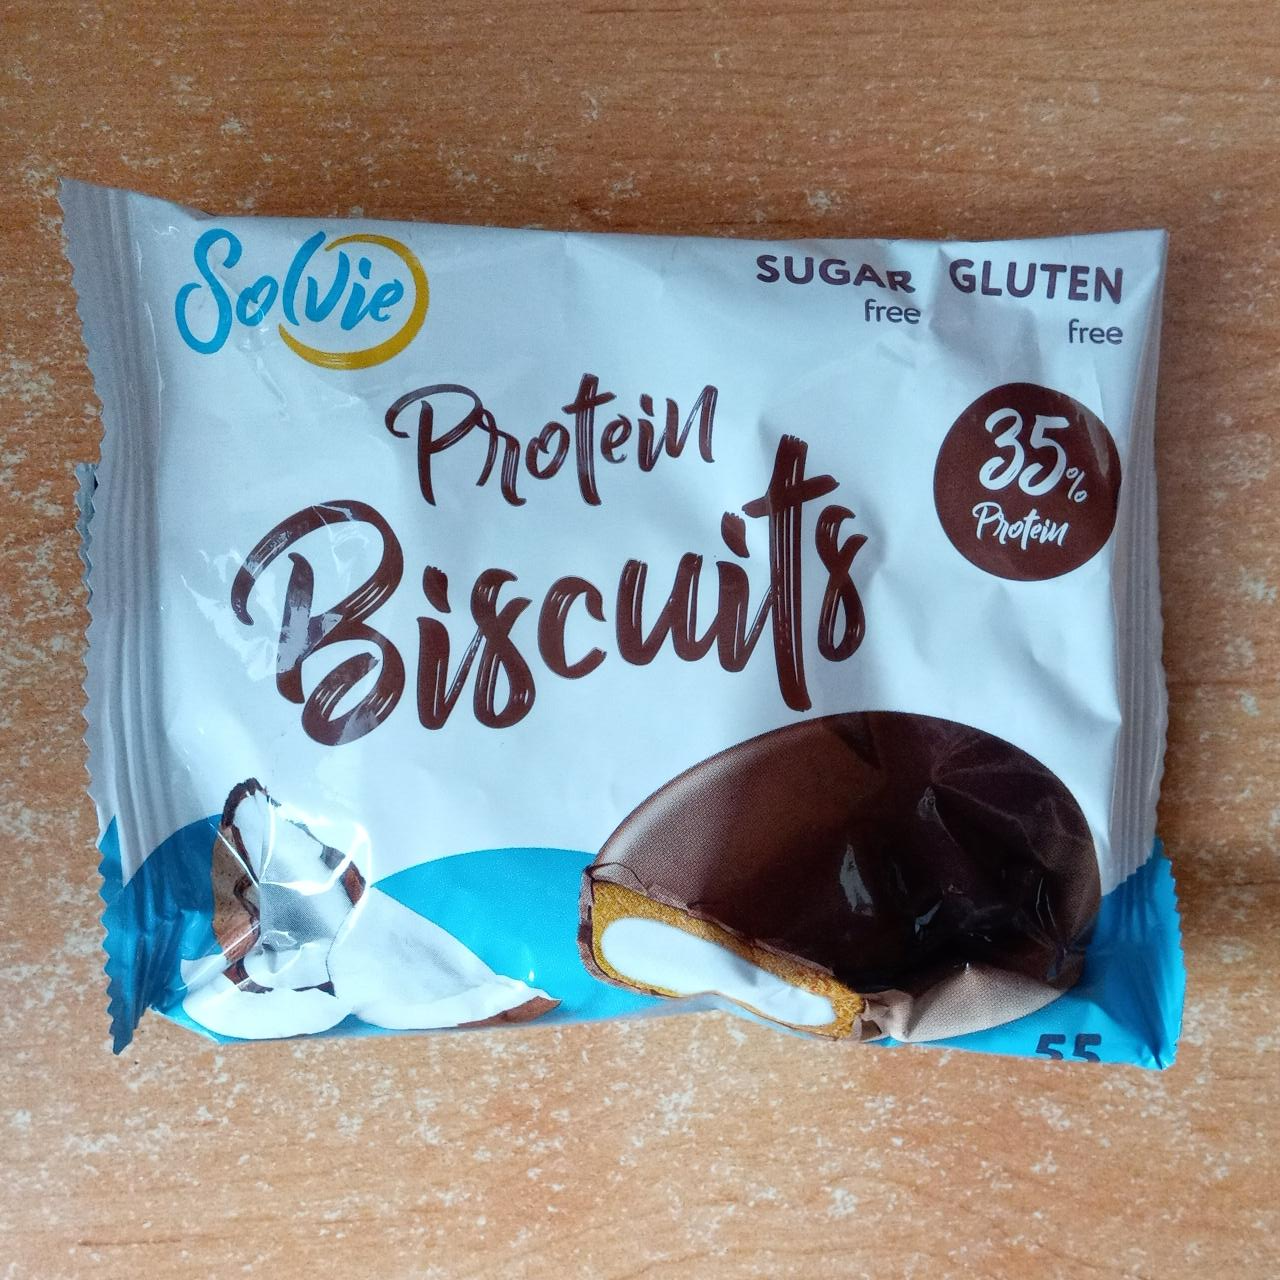 Фото - Печенье Protein Biscuits протеиновое, глазированное молочным шоколадом, с белково-кремовой начинкой Кокос без сахара Solvie